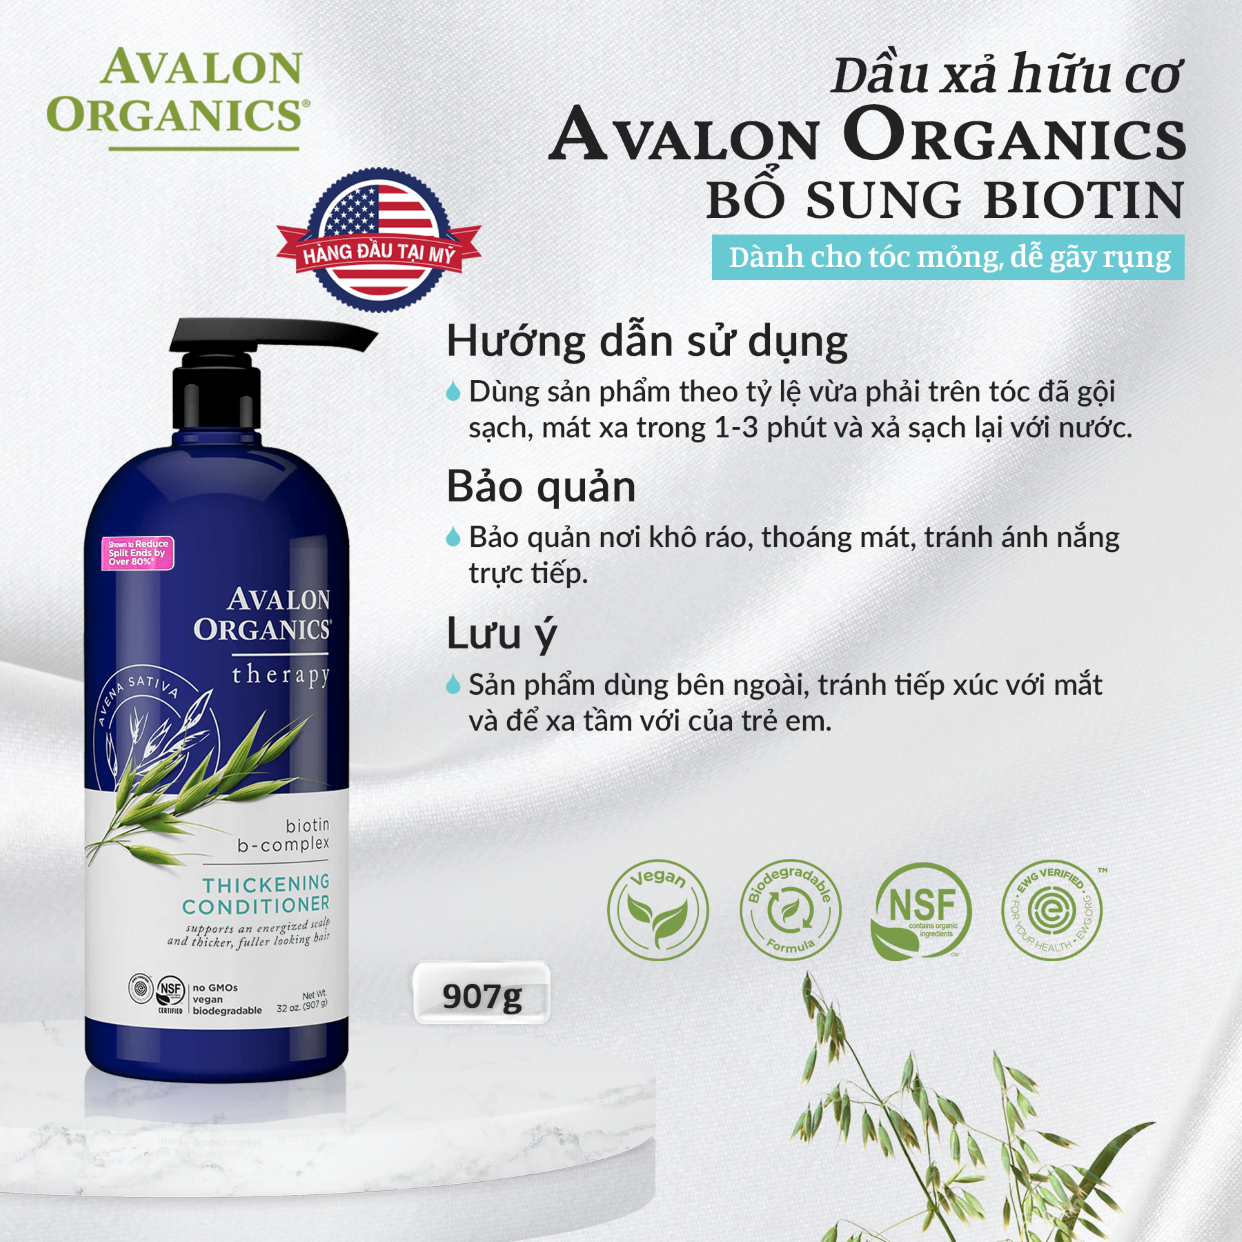 Dầu gội Dầu xả hữu cơ Avalon Organics bổ sung Biotin dành cho tóc mỏng dễ gãy rụng